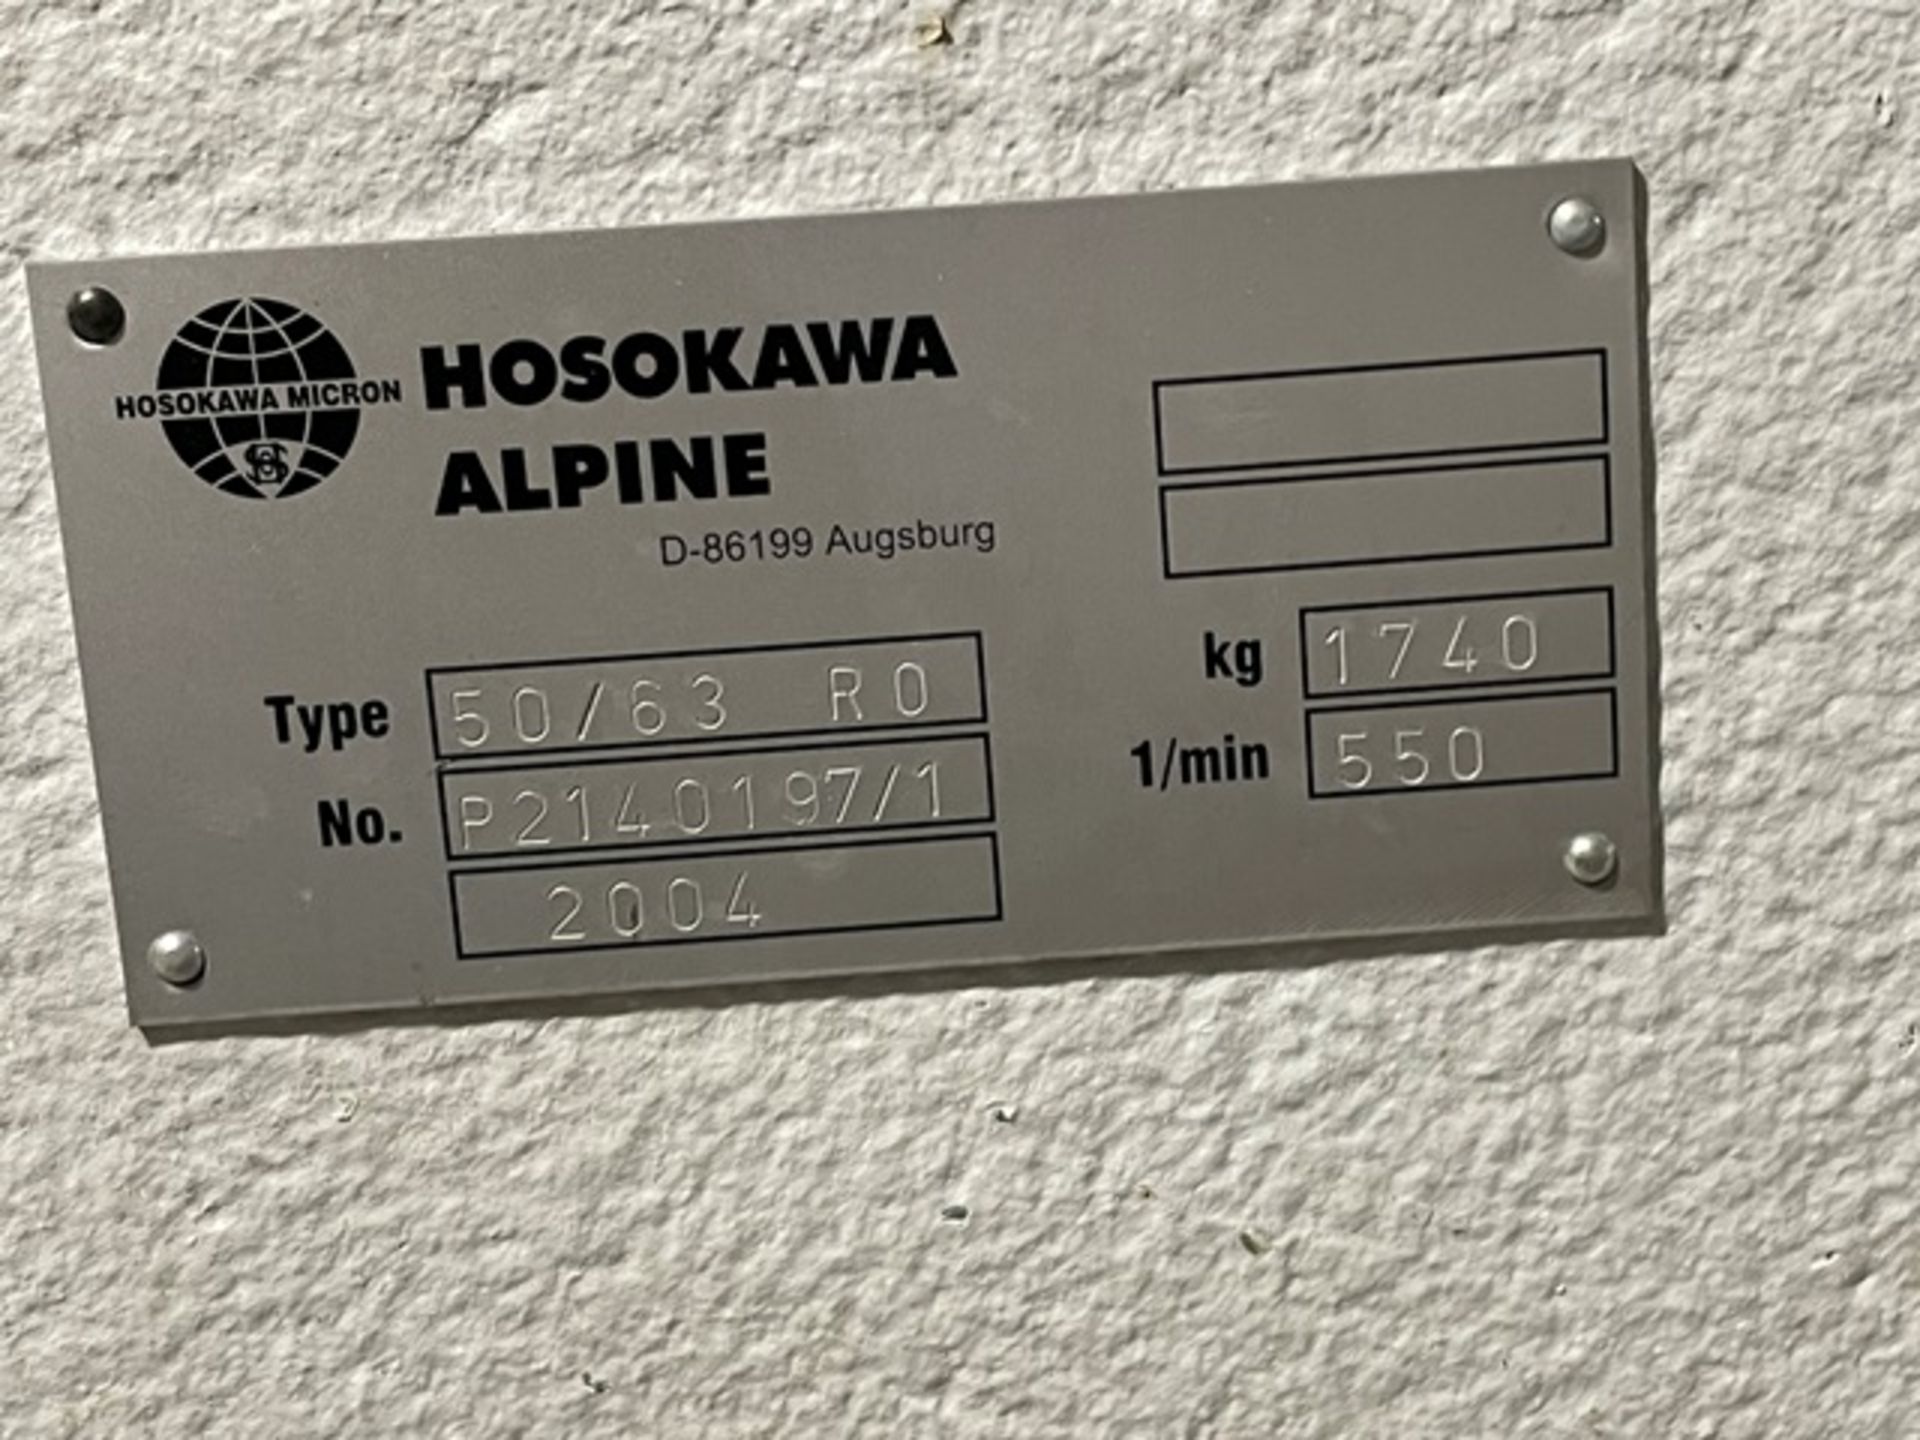 Hosokawa Alpine Type 50/63/RO - Image 3 of 4